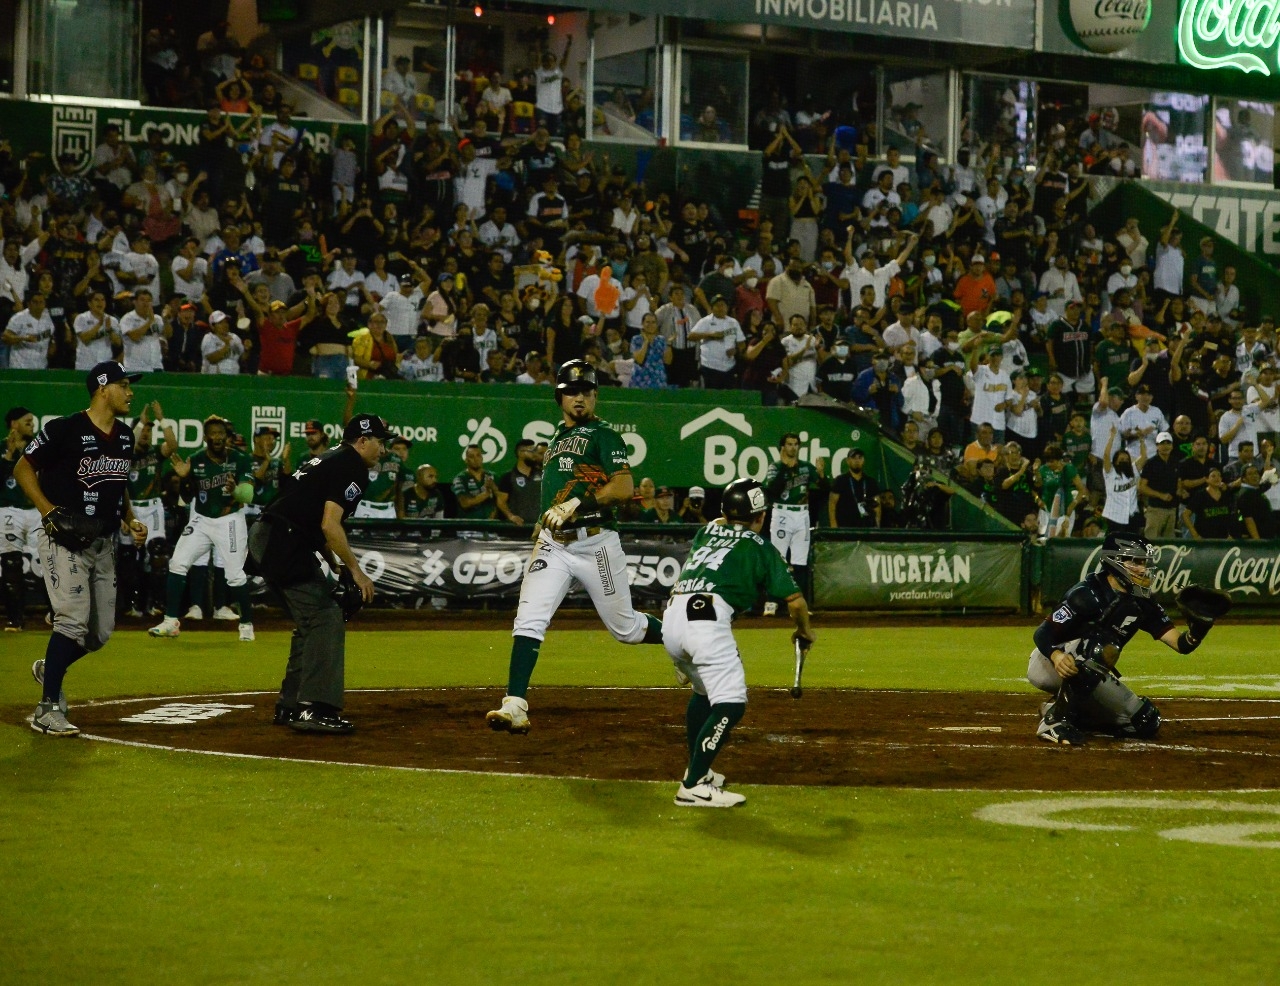 Leones de Yucatán se llevan el tercer juego de la Serie del Rey en casa